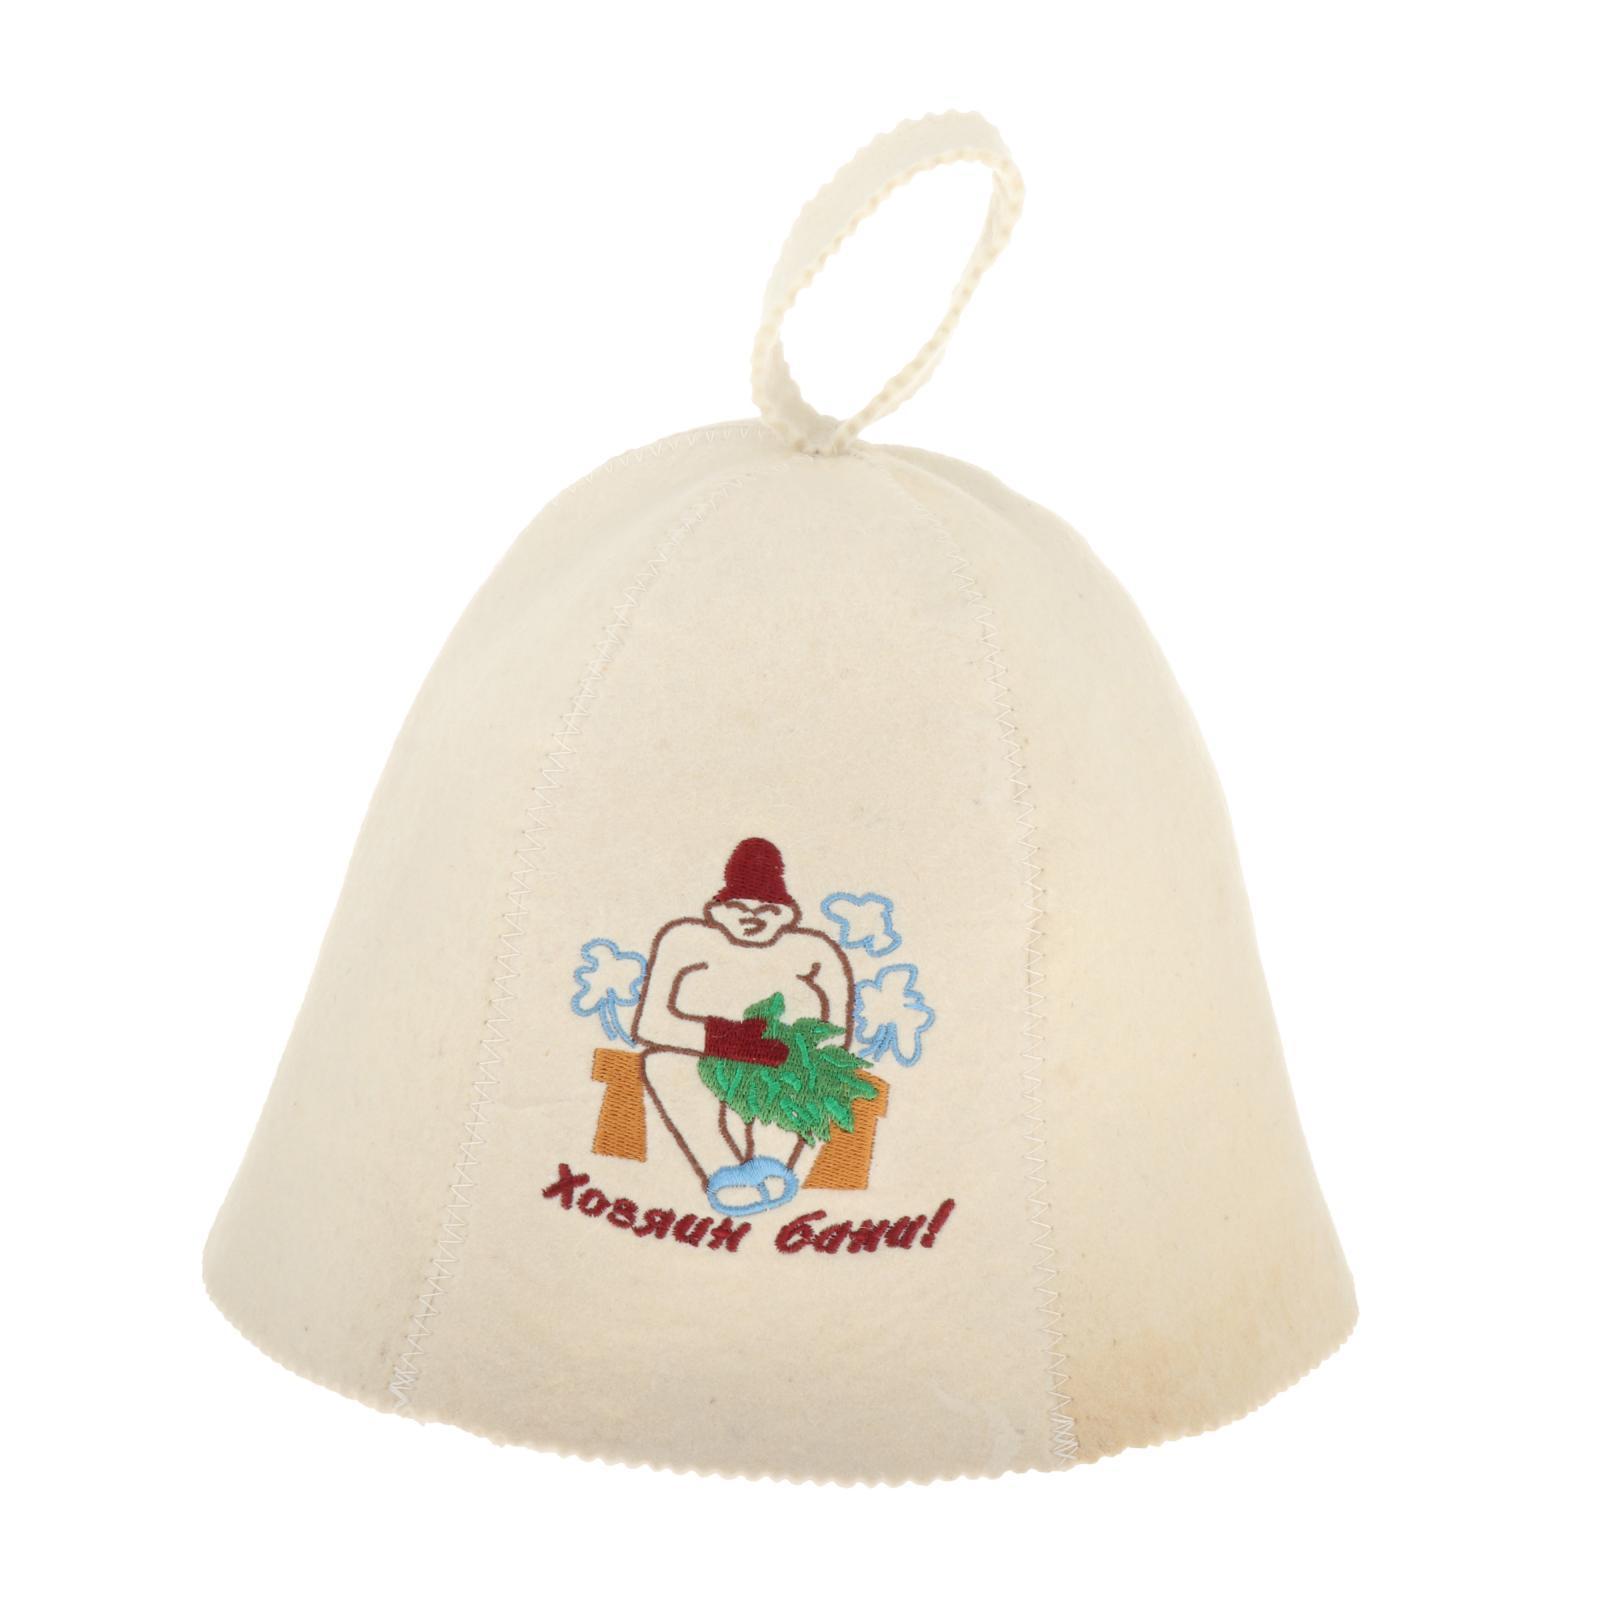 Set of 4 Wool Felt Bath Hat for Sauna Bath Bathhouse Spa Russian Style Gift